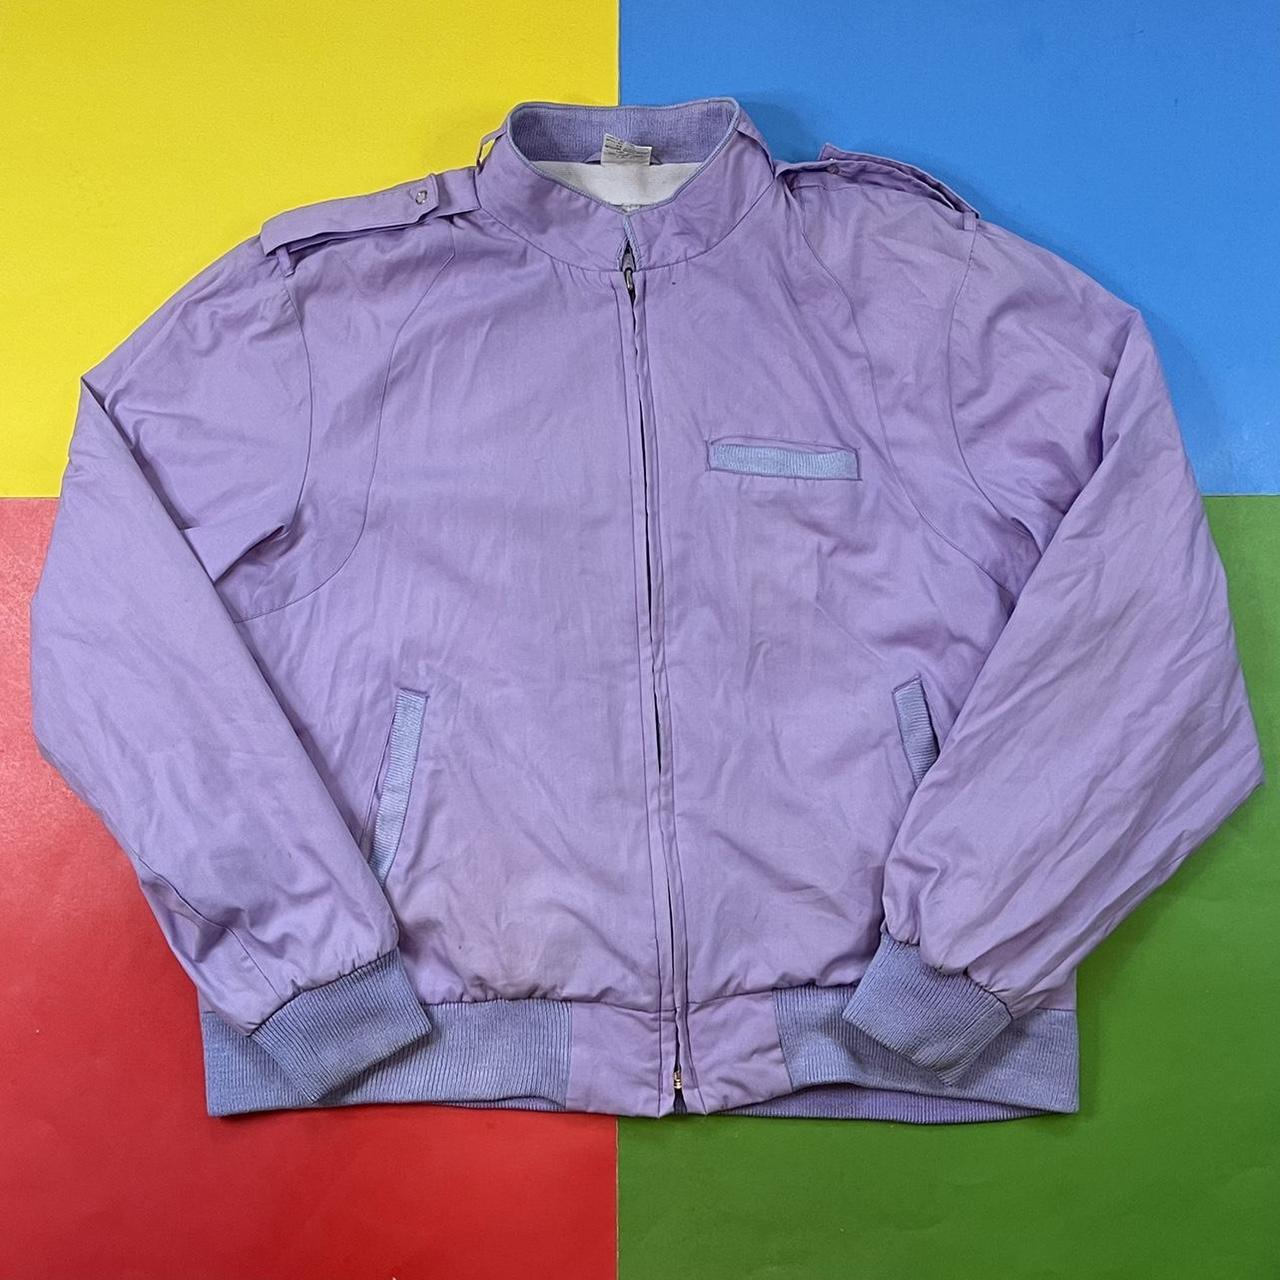 Vintage purple jacket. 80’s “Members Only style”... - Depop